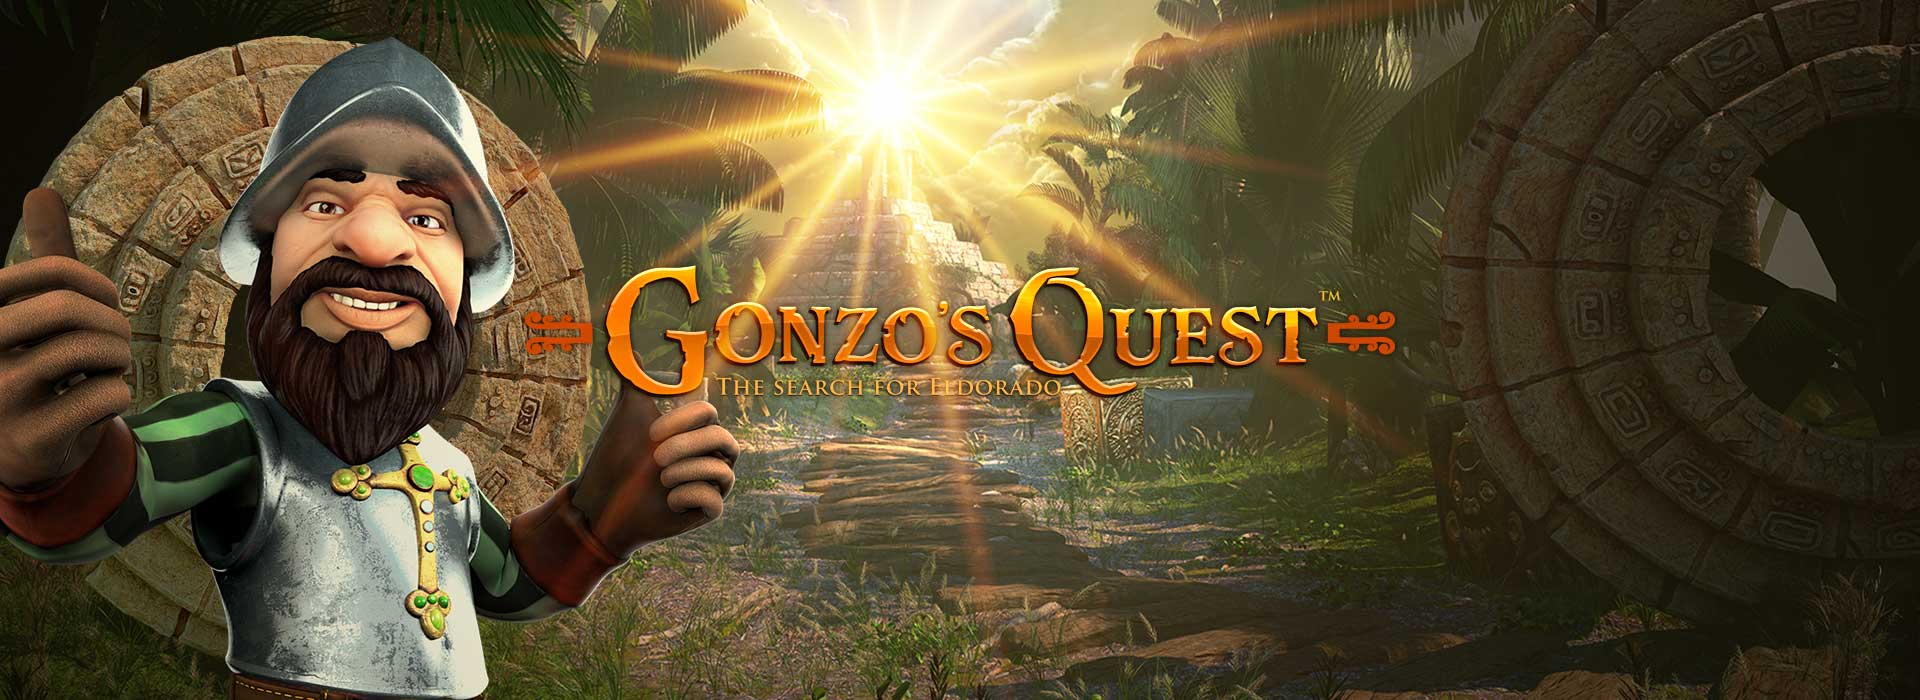 Gonzos Quest header